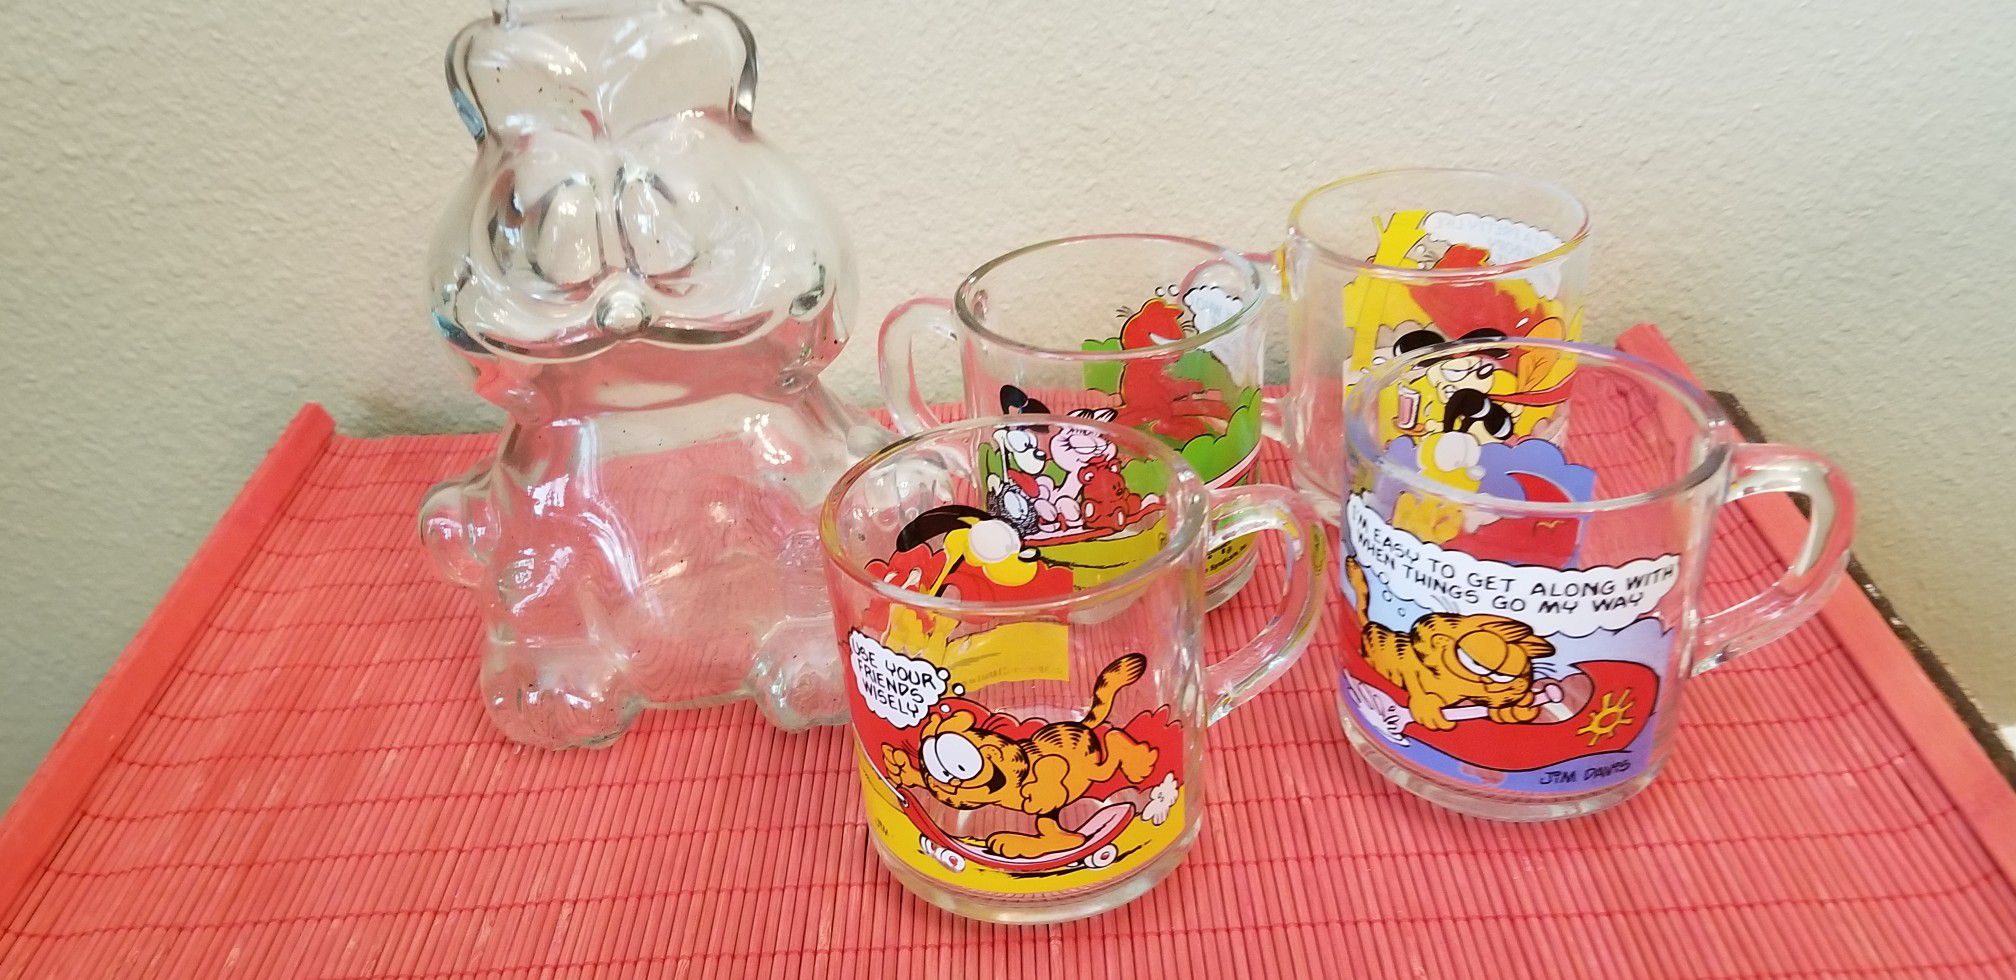 Garfield glass bank and mugs